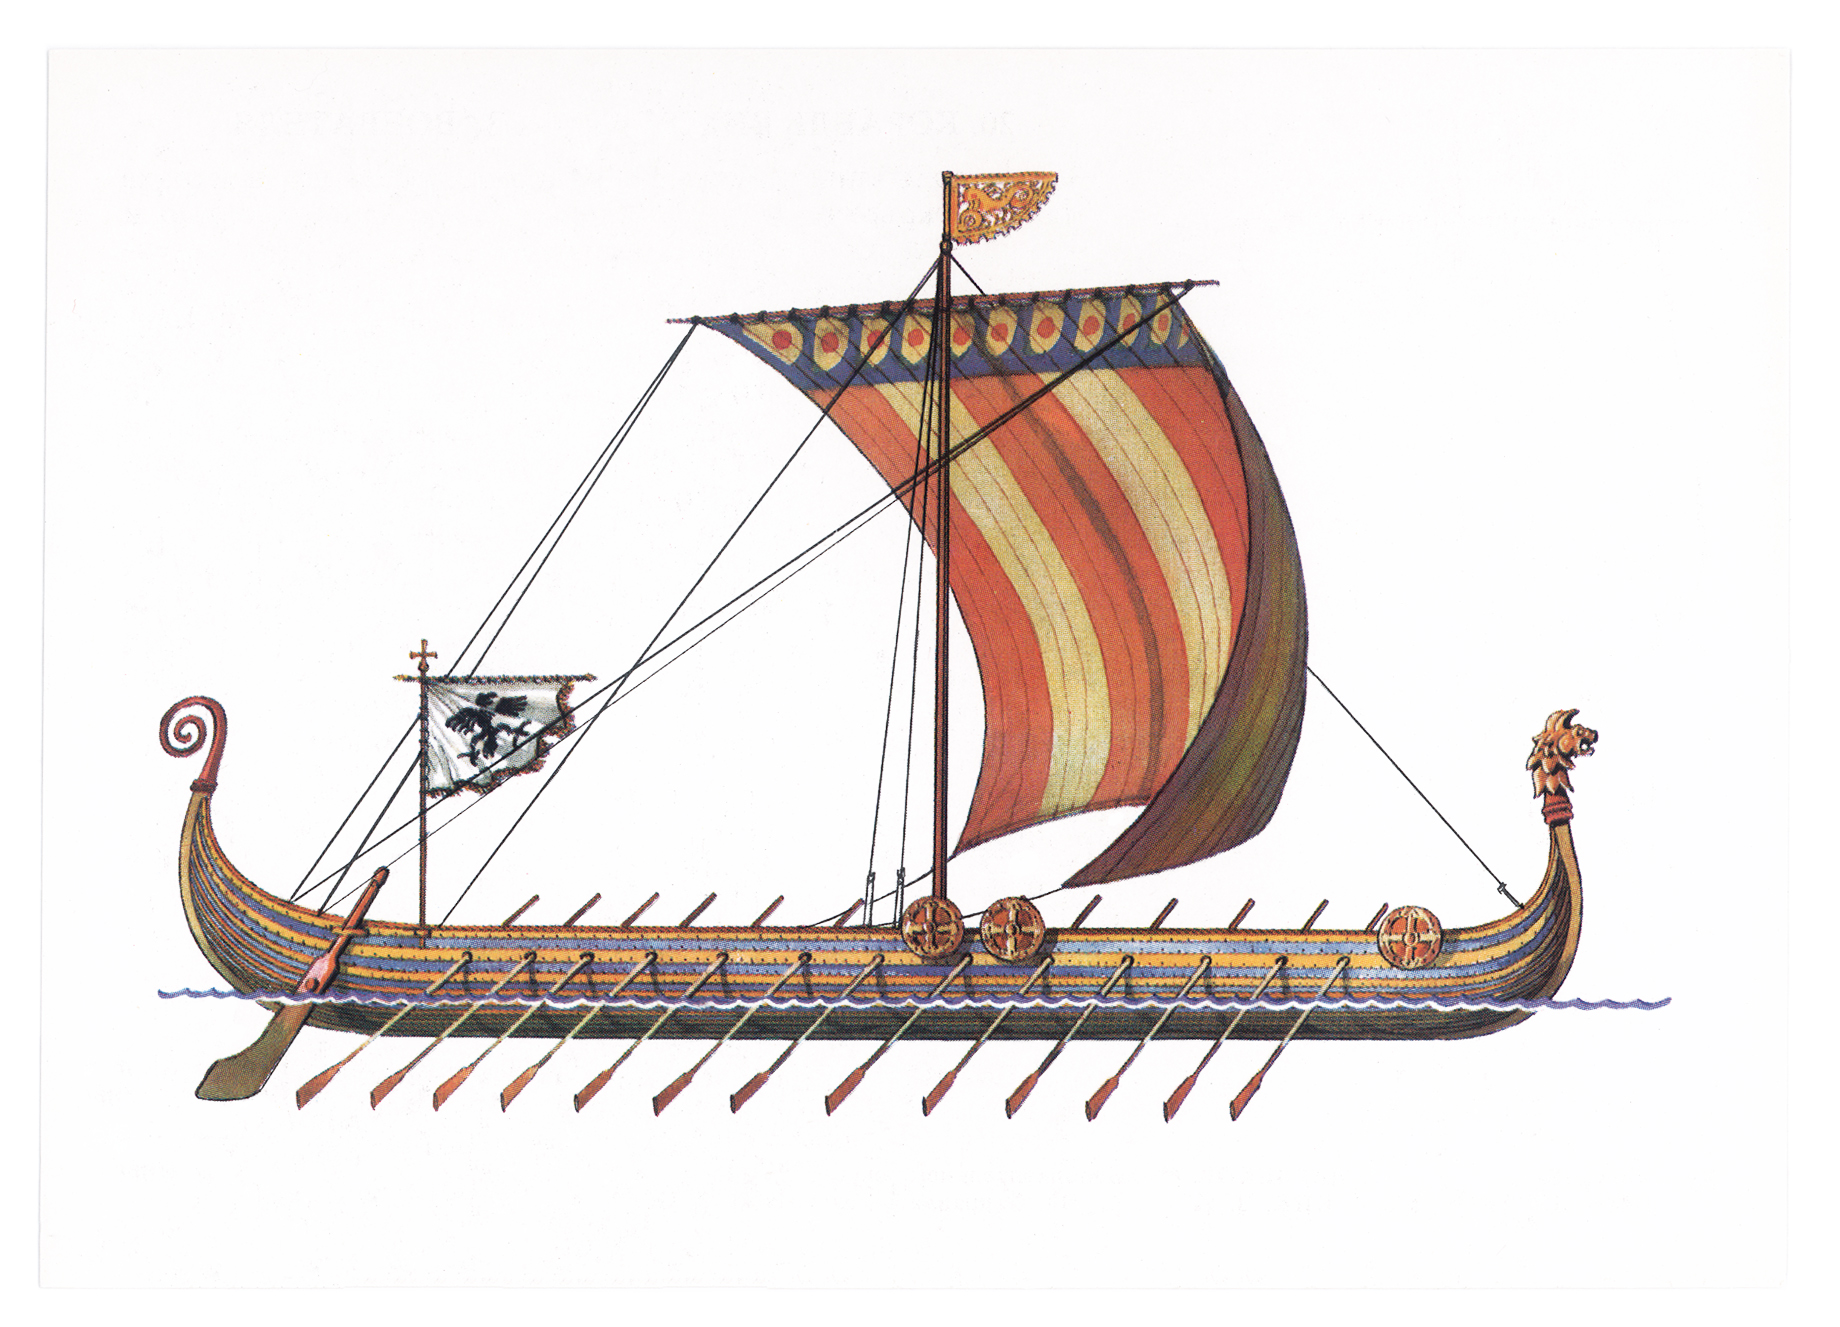 Описание ладьи. Корабль викингов Drakkar. Ладья викингов дракар. Корабль викингов Драккар 10 век. Корабли Вильгельма завоевателя.